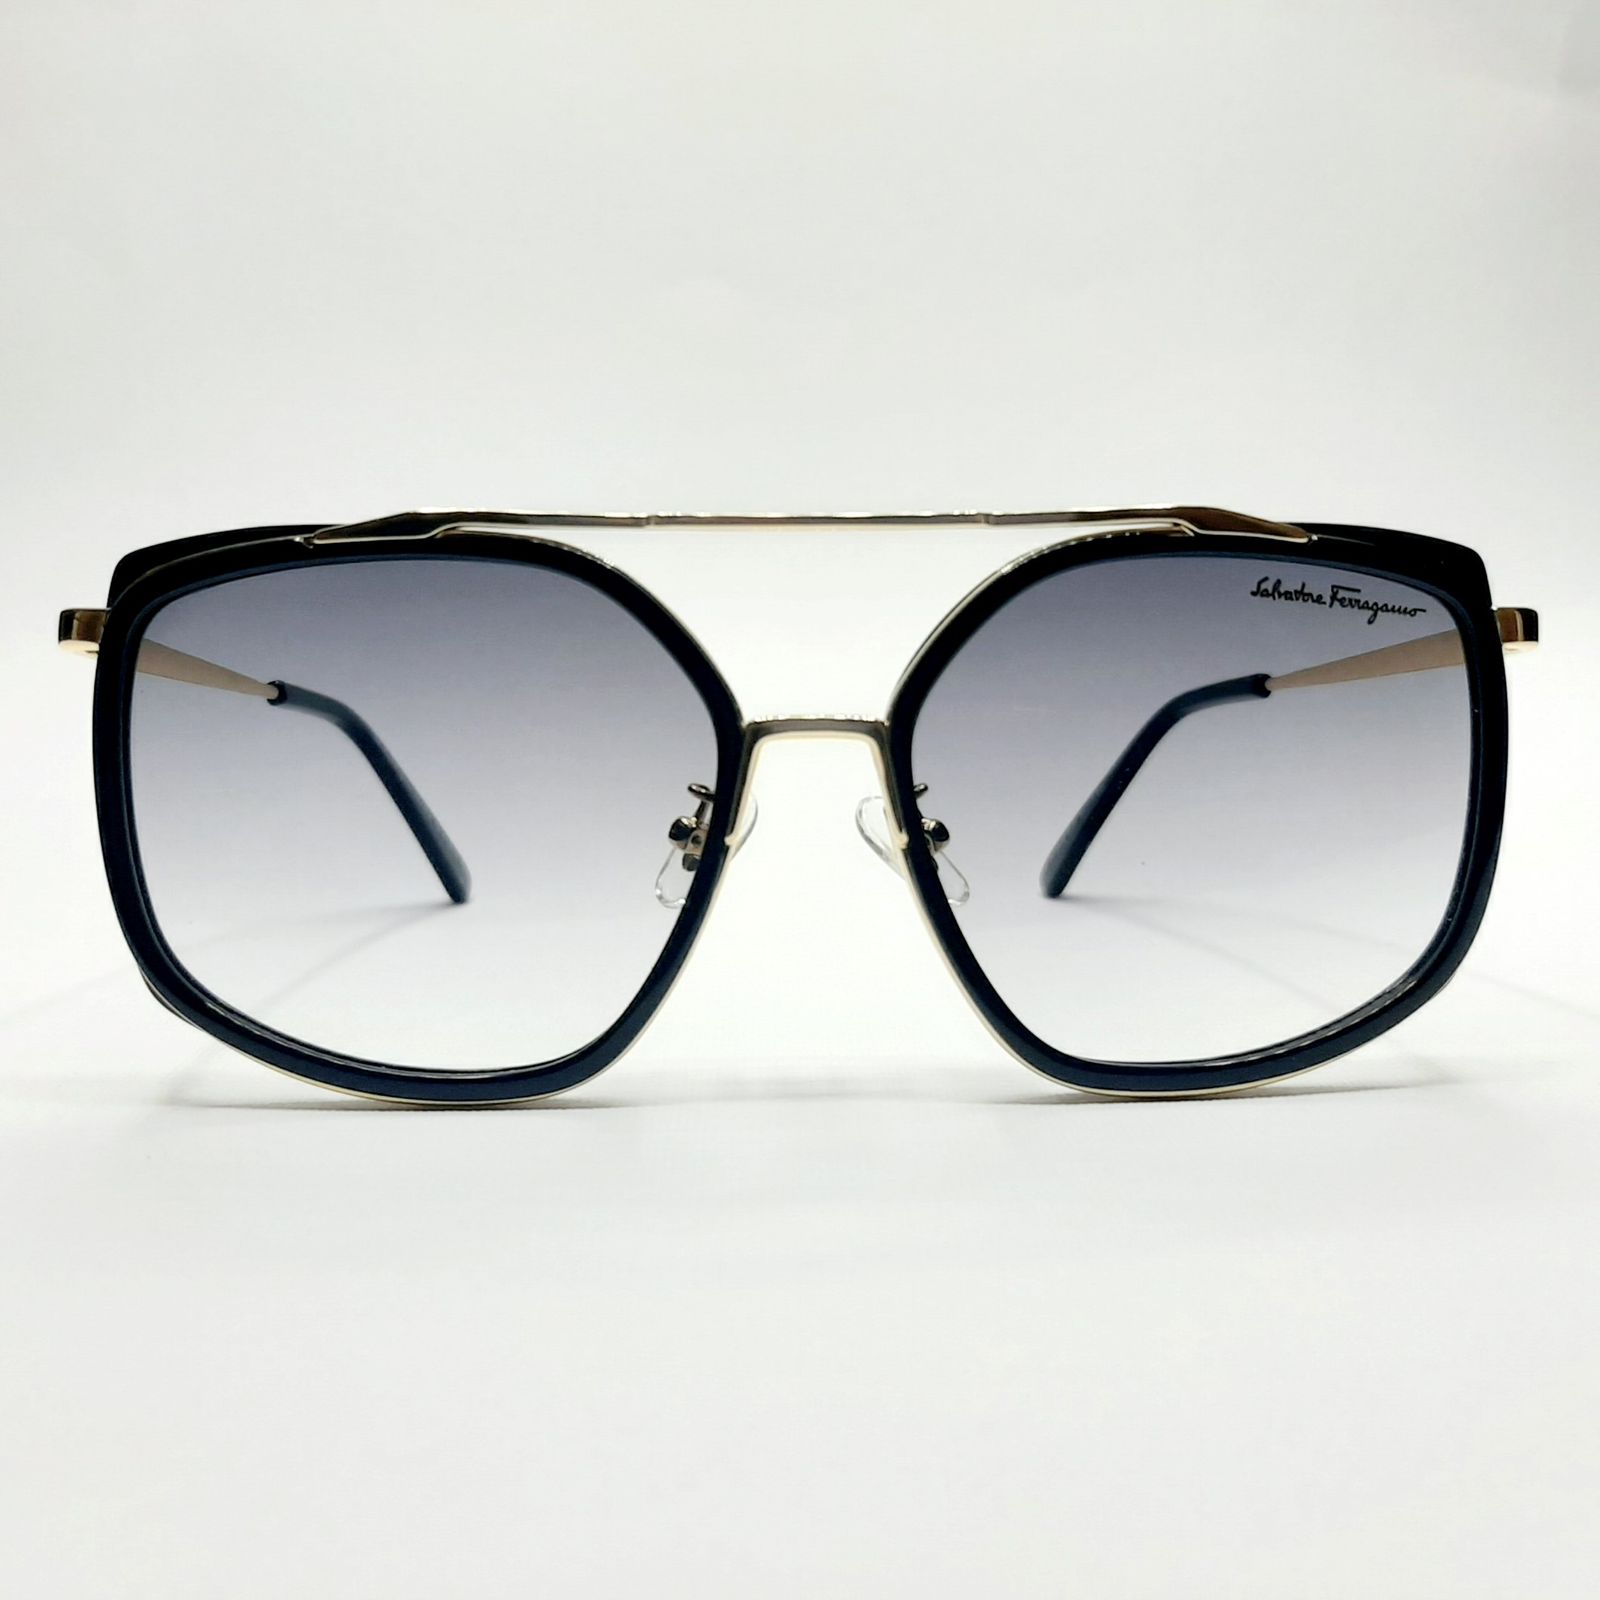 عینک آفتابی سالواتوره فراگامو مدل SF8068c1 -  - 2